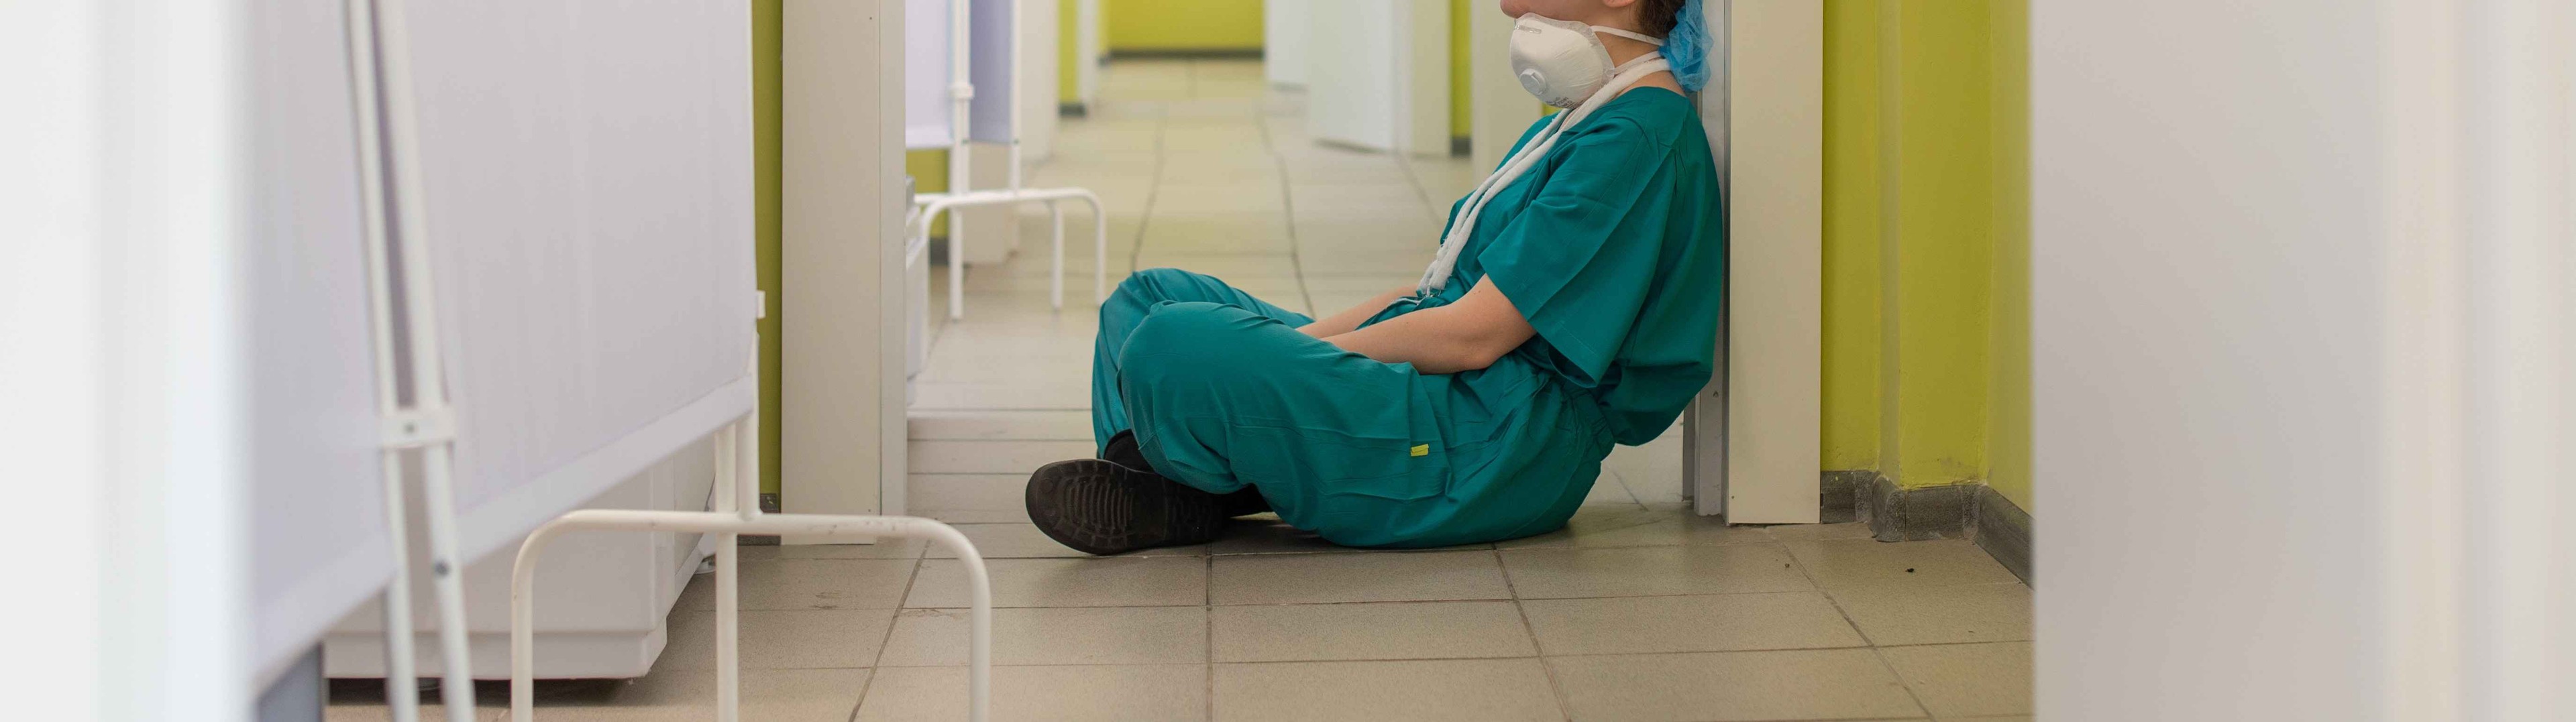 Madrid pone en manos de las enfermeras la atención al paciente ante la ausencia de médicos